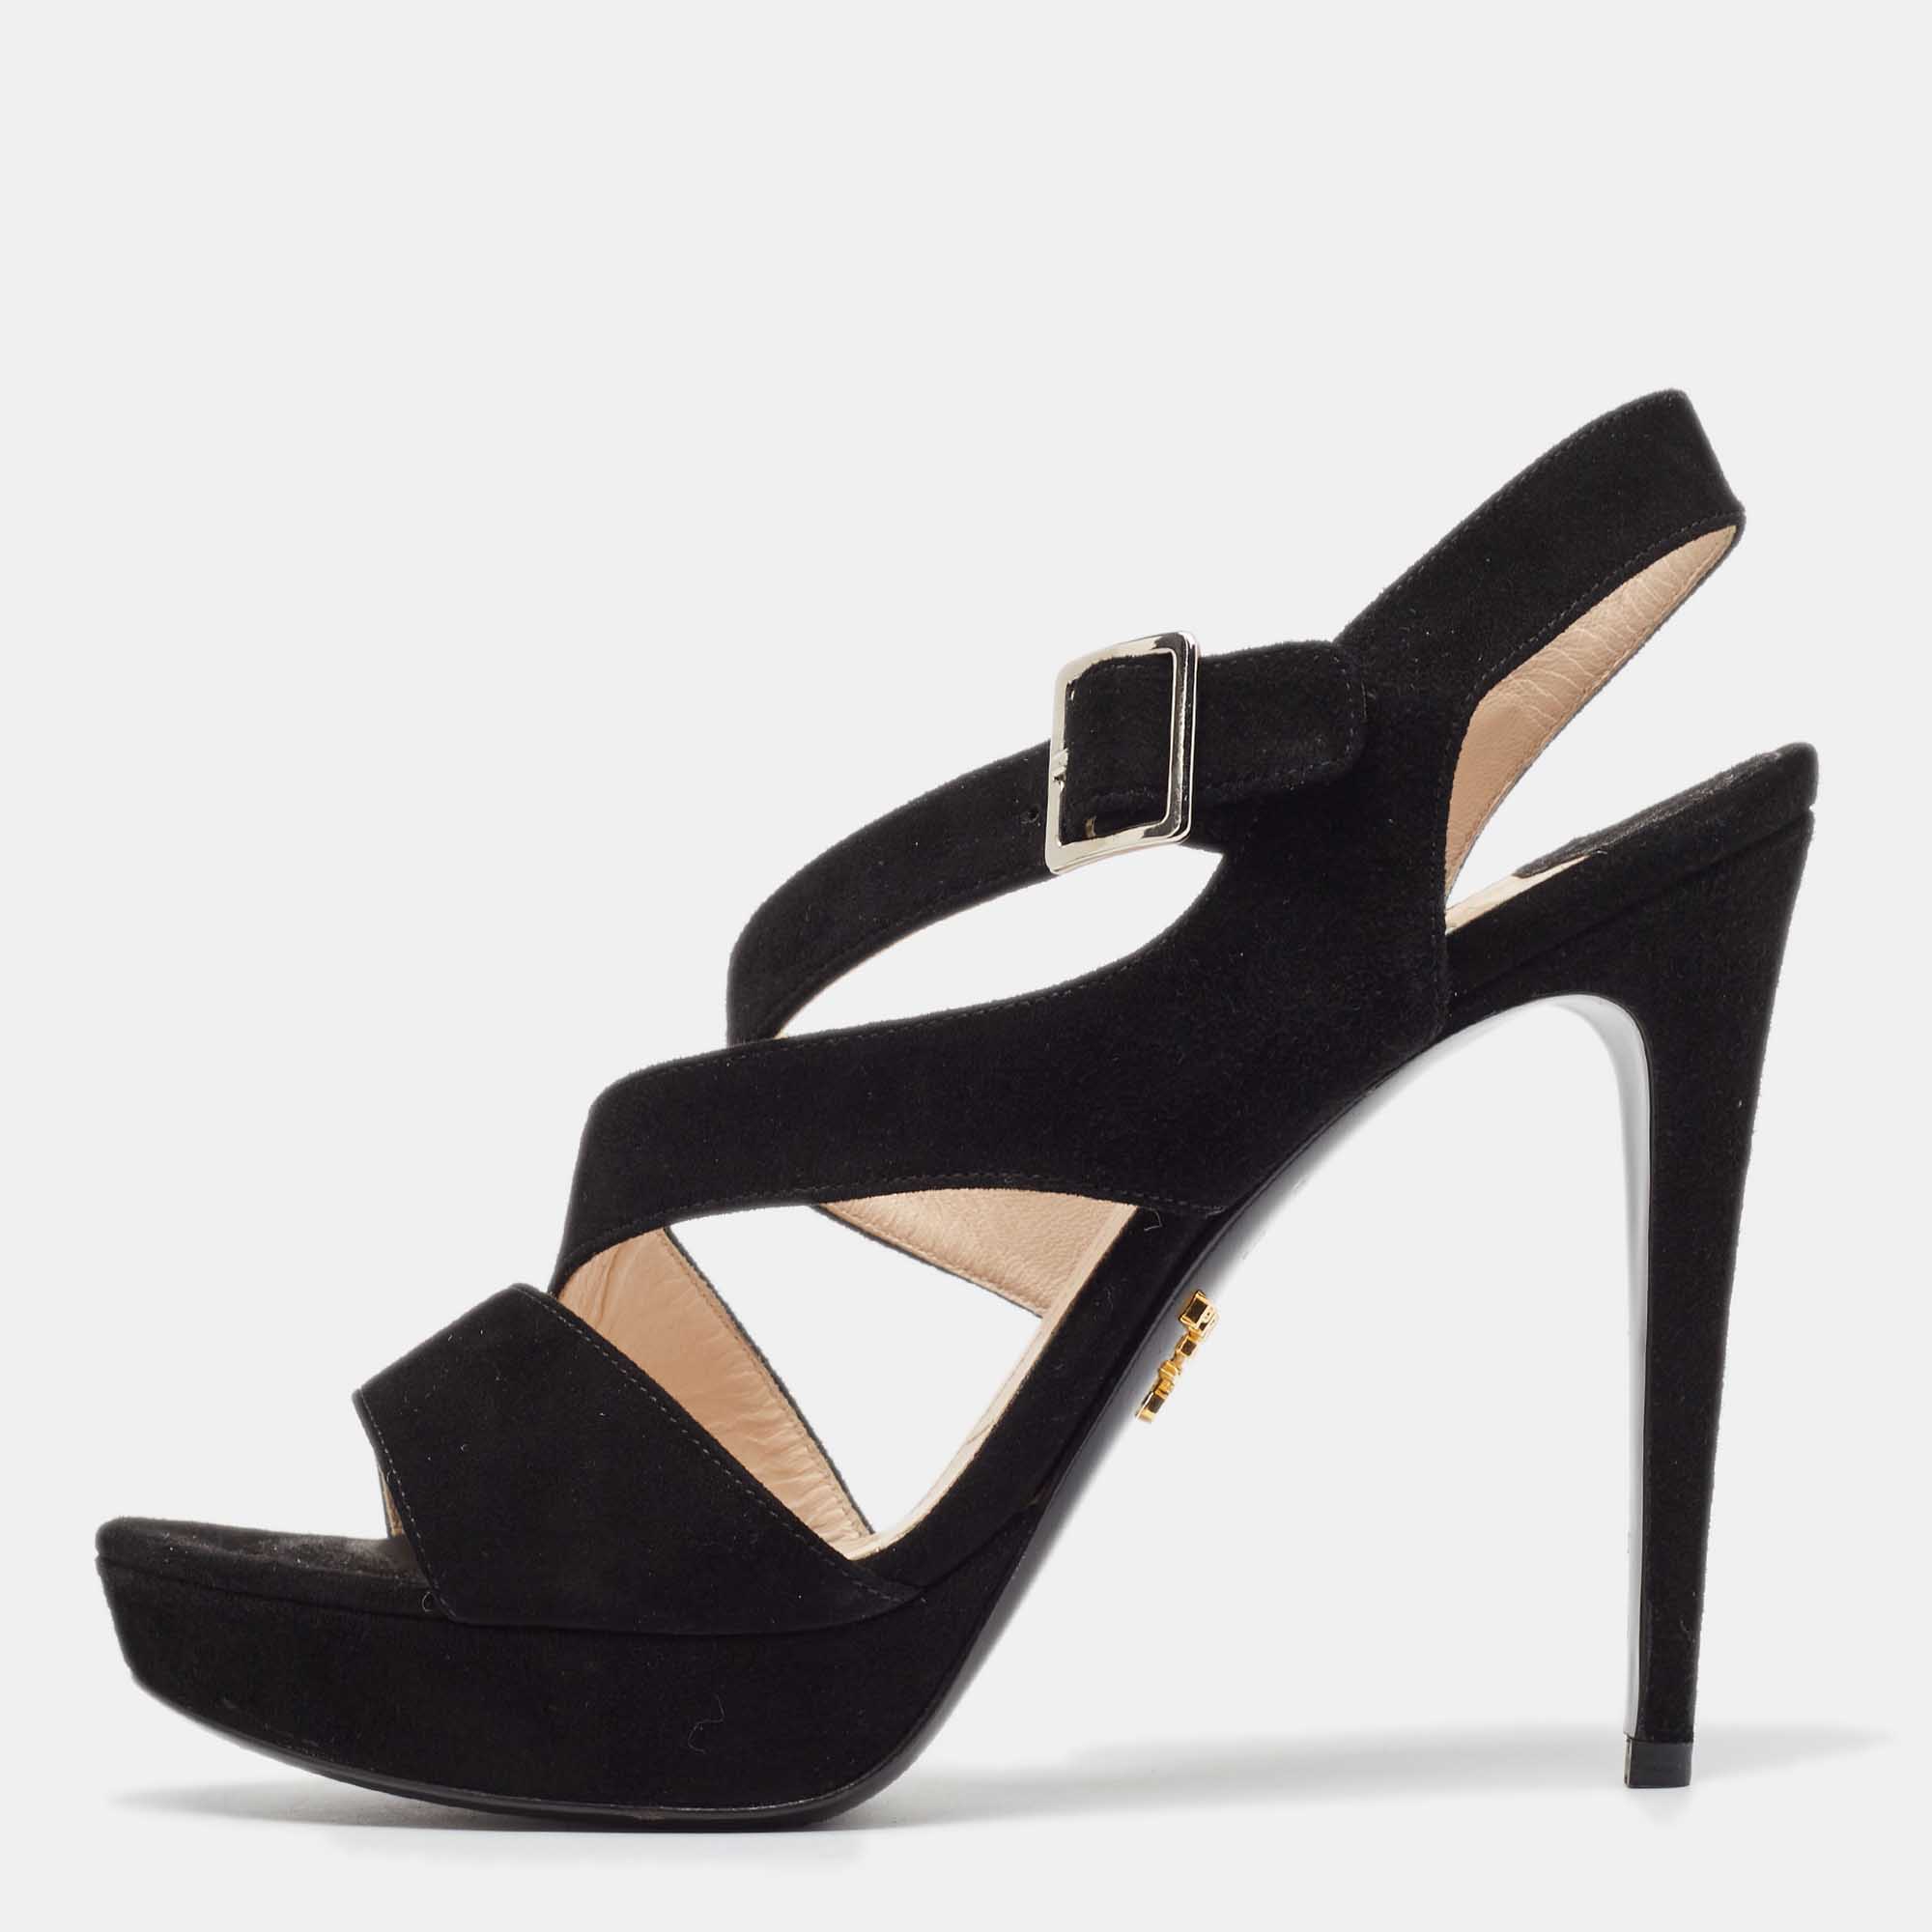 Prada Black Suede Platform Strappy Sandals Size 37.5